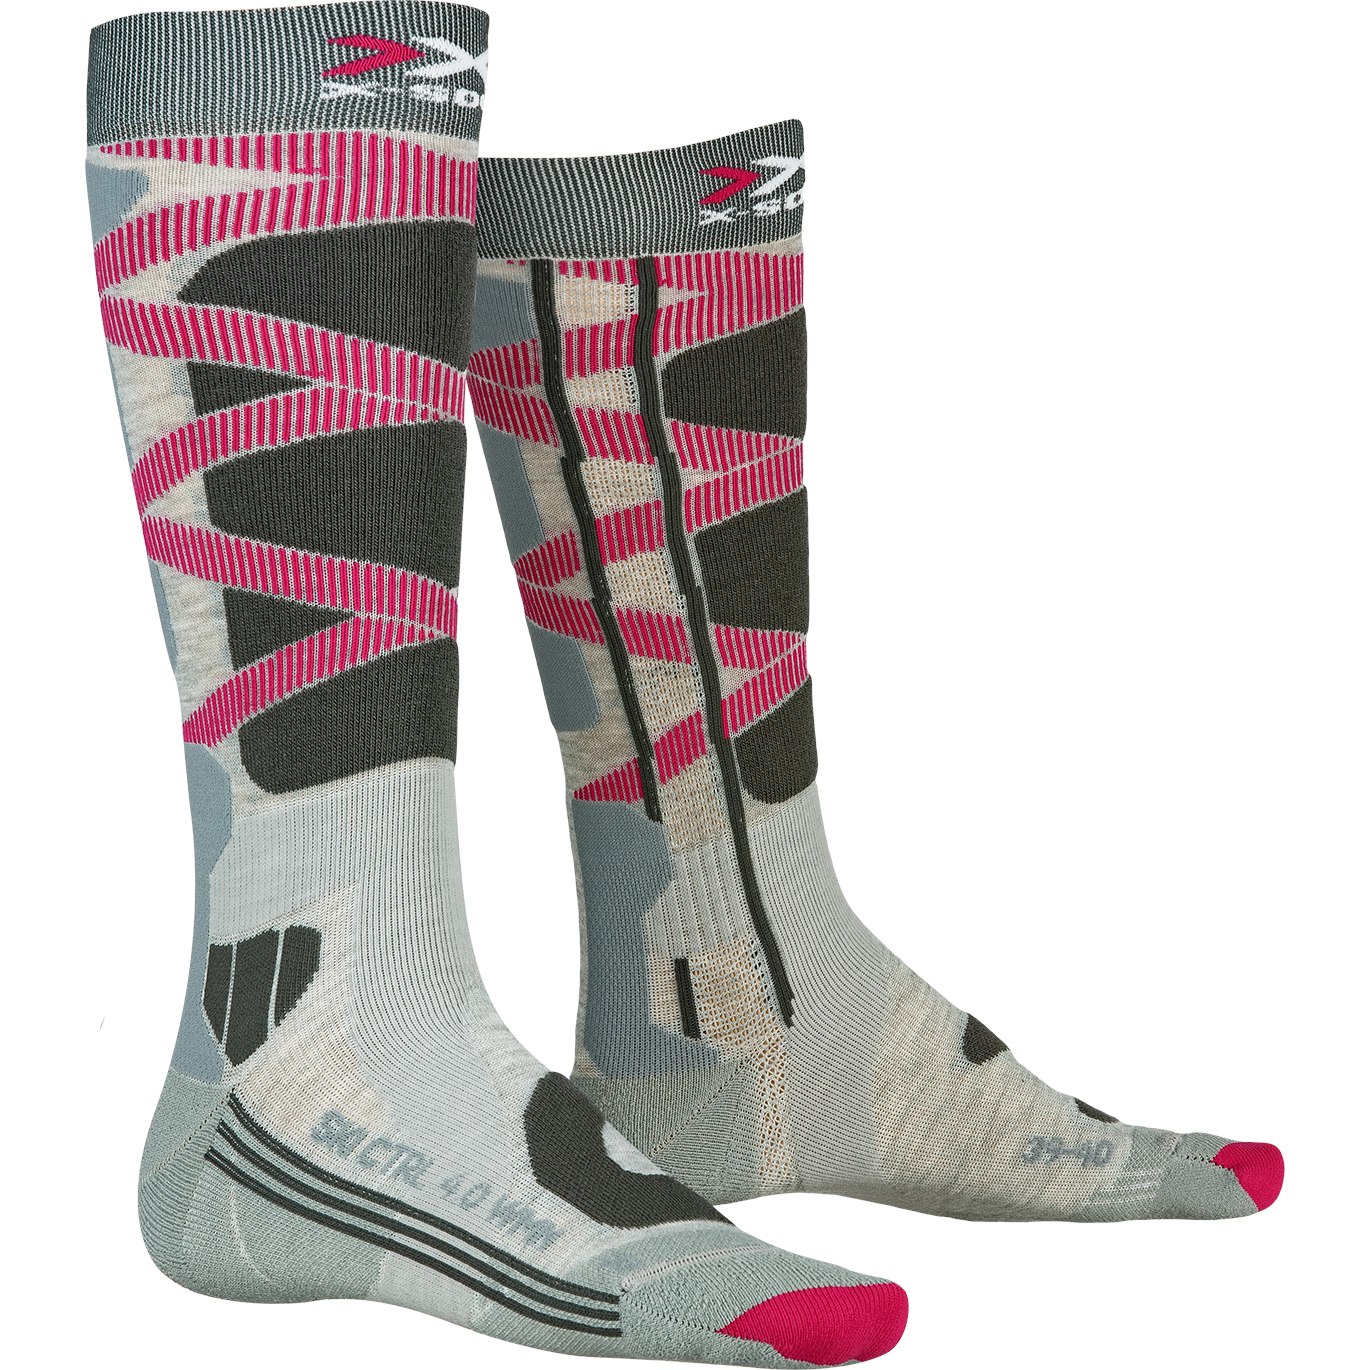 Produktbild von X-Socks Ski Control 4.0 Socken für Damen - grey melange/charcoal